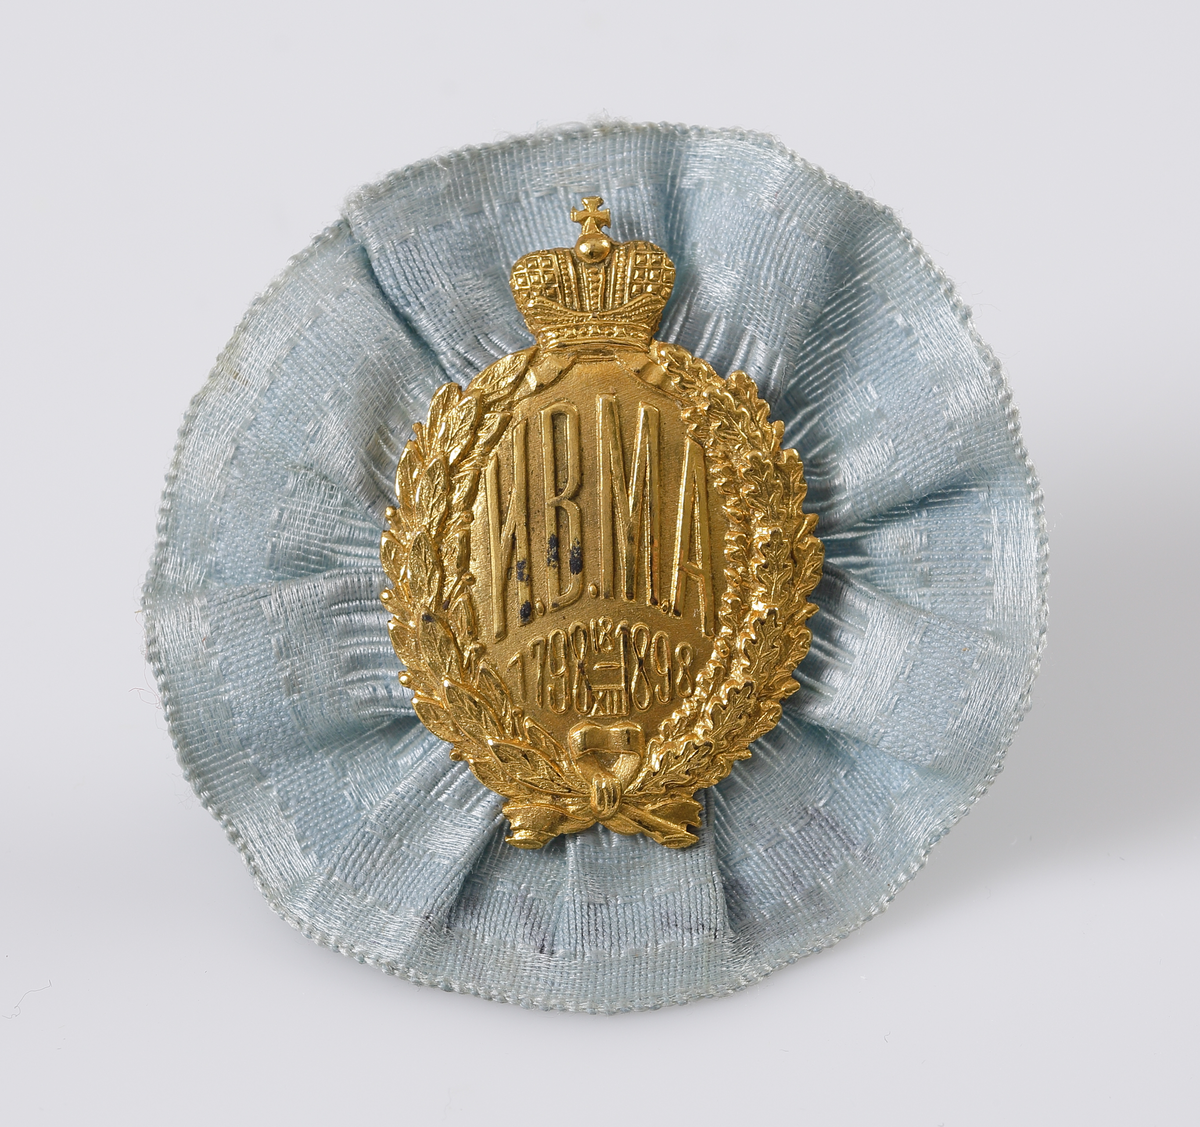 Kotiljong/brosch i ljusblått siden och pressat emblem i gul metall med text; "HBMA 1798 18/XII 1898", under rysk kejserlig krona.

Inskrivet i huvudbok 1969.